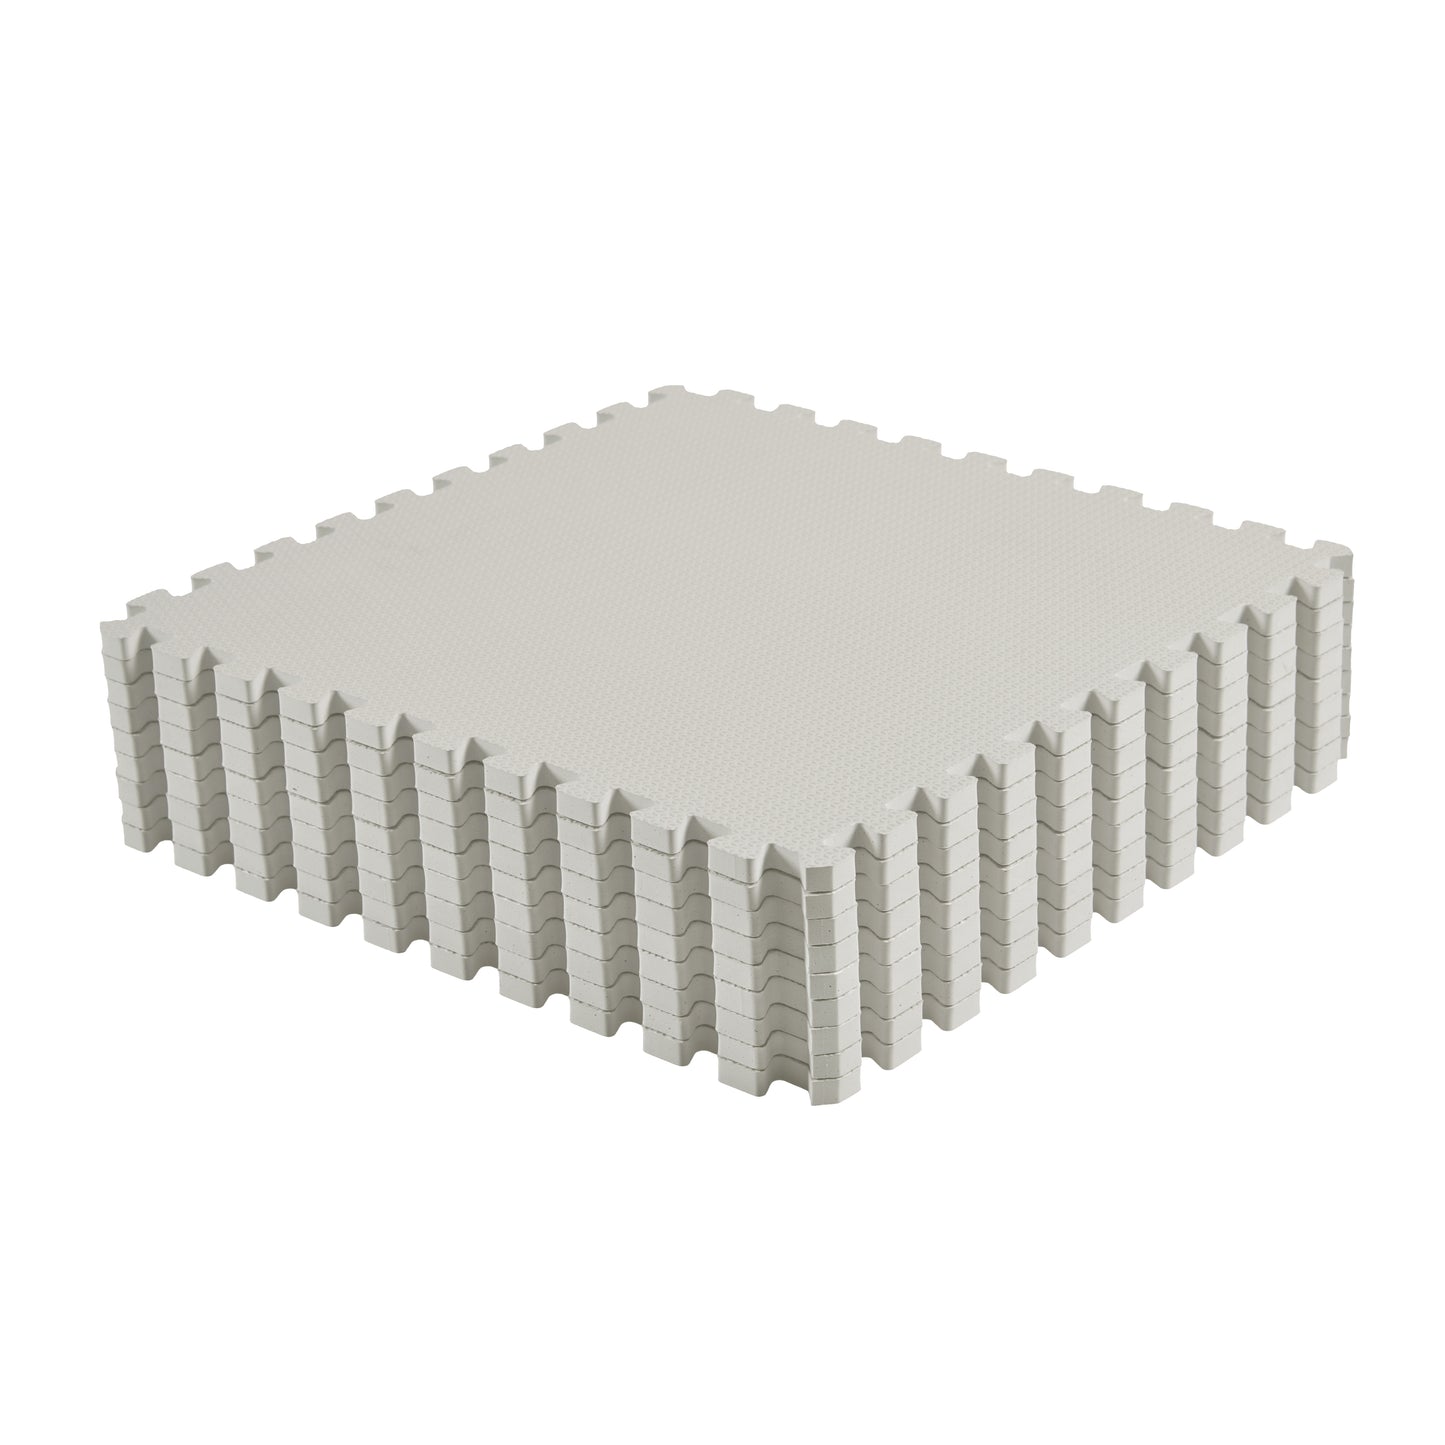 Classic Foam Playmat in Stone